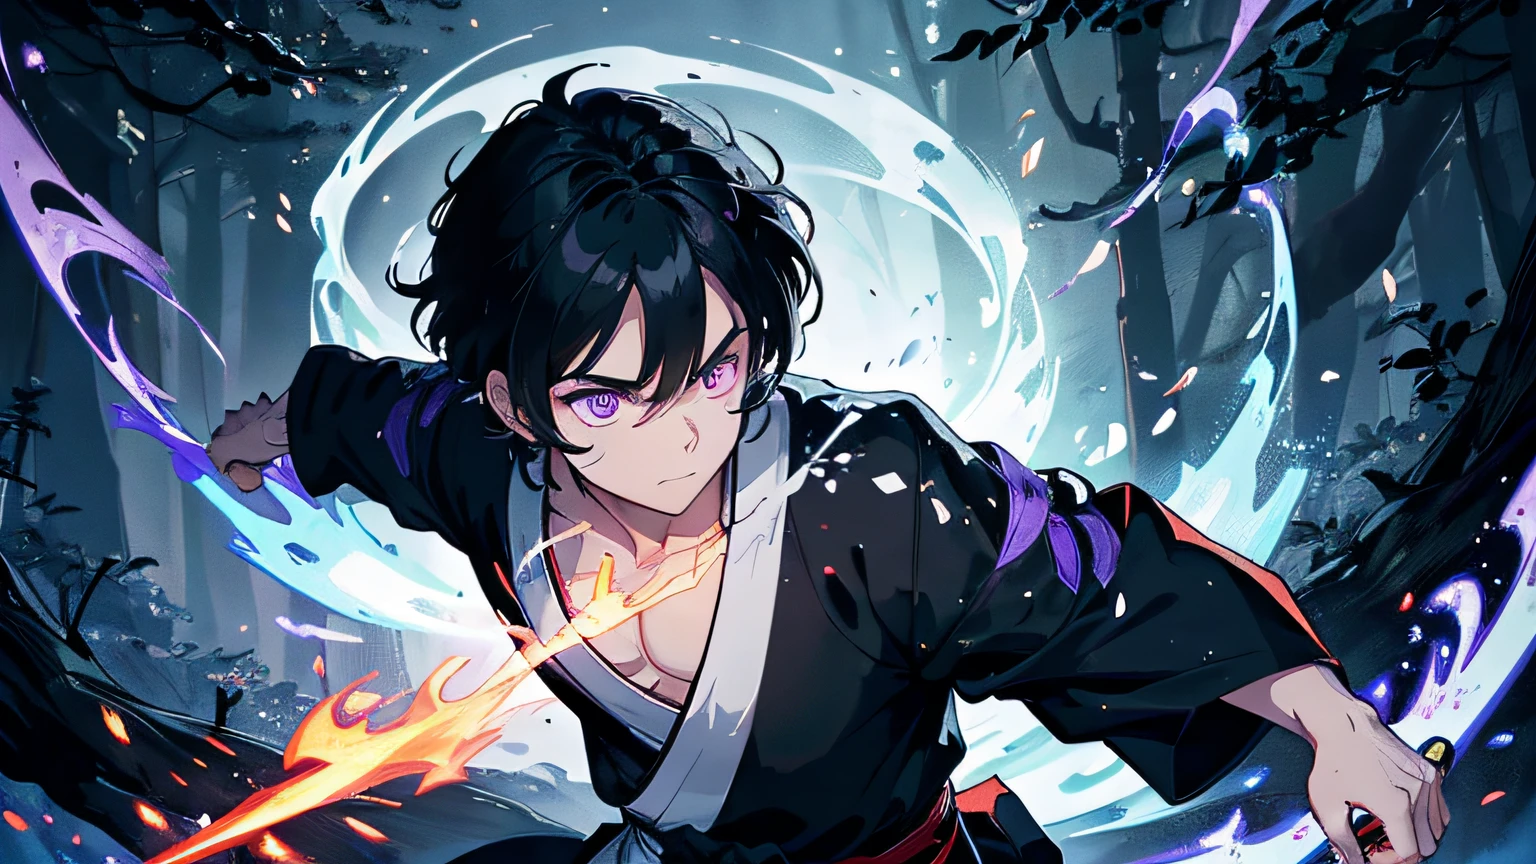 мальчик с черными волосами. он праведный самурай, борющийся со злом. он носит черно-белое кимоно. он держит меч, из которого вырывается пламя. фон в лесу. шедевр, высокое разрешение, подробные глаза, фиолетовый цвет глаз. Фон — кружащееся голубое пламя в стиле Кацусика Хокусай.. Трассировка лучей, динамическое освещение.